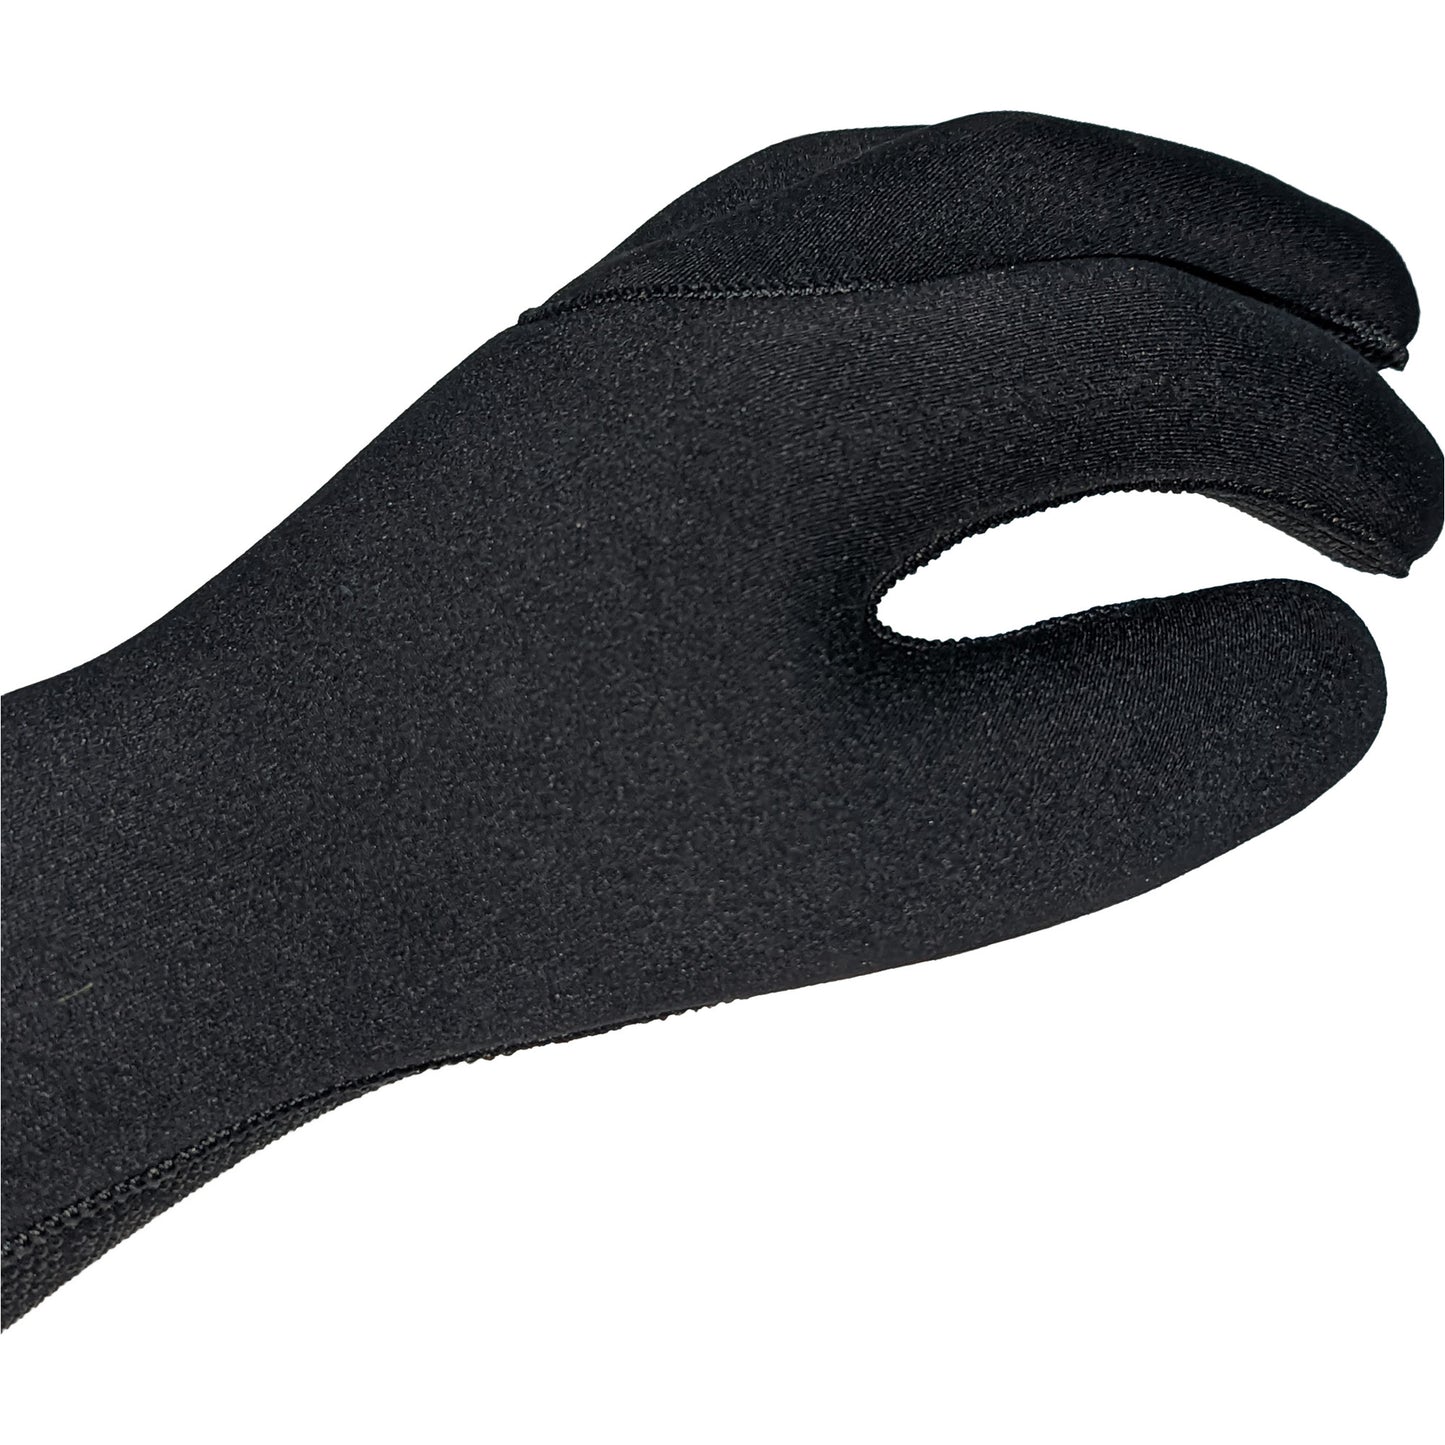 Furno Wetsuit Gloves